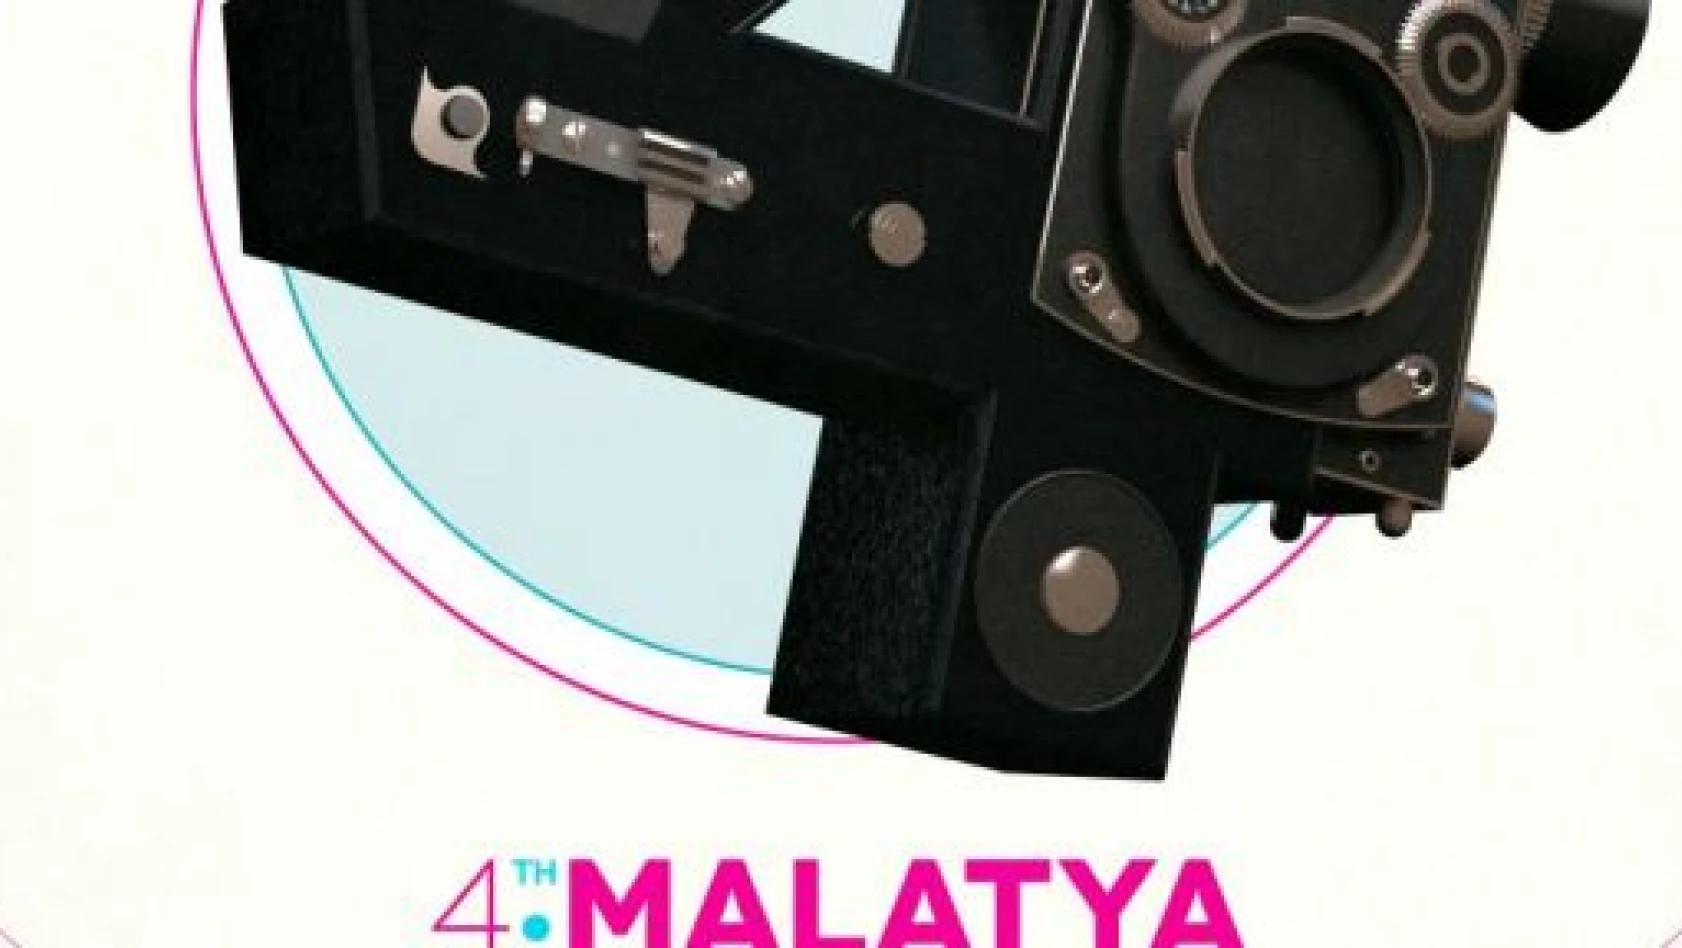 Malatya Uluslararası Film Festivali, 15 Kasım'da başlıyor